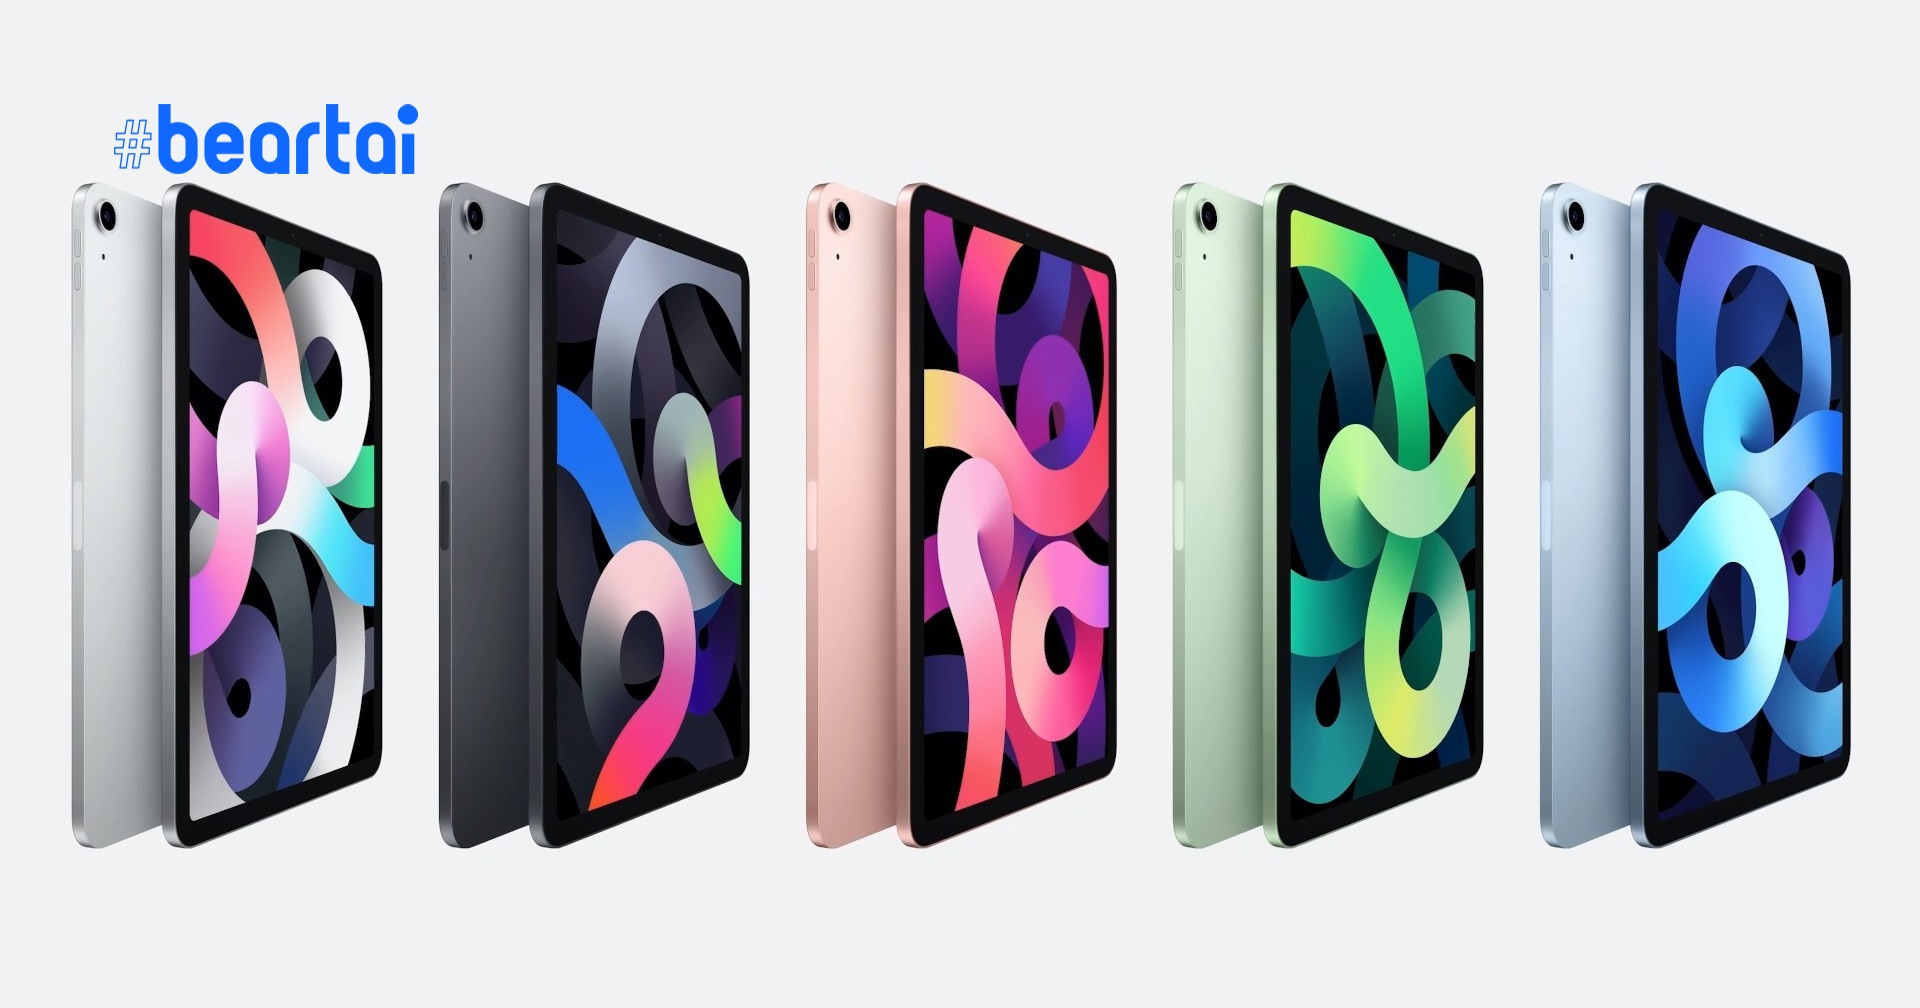 โอมจงมา! Apple อาจเปิดตัว iPad mini ดีไซน์ใหม่ จอ 8.5 นิ้วพร้อม Apple A14 และ USB-C ต้นปีหน้า